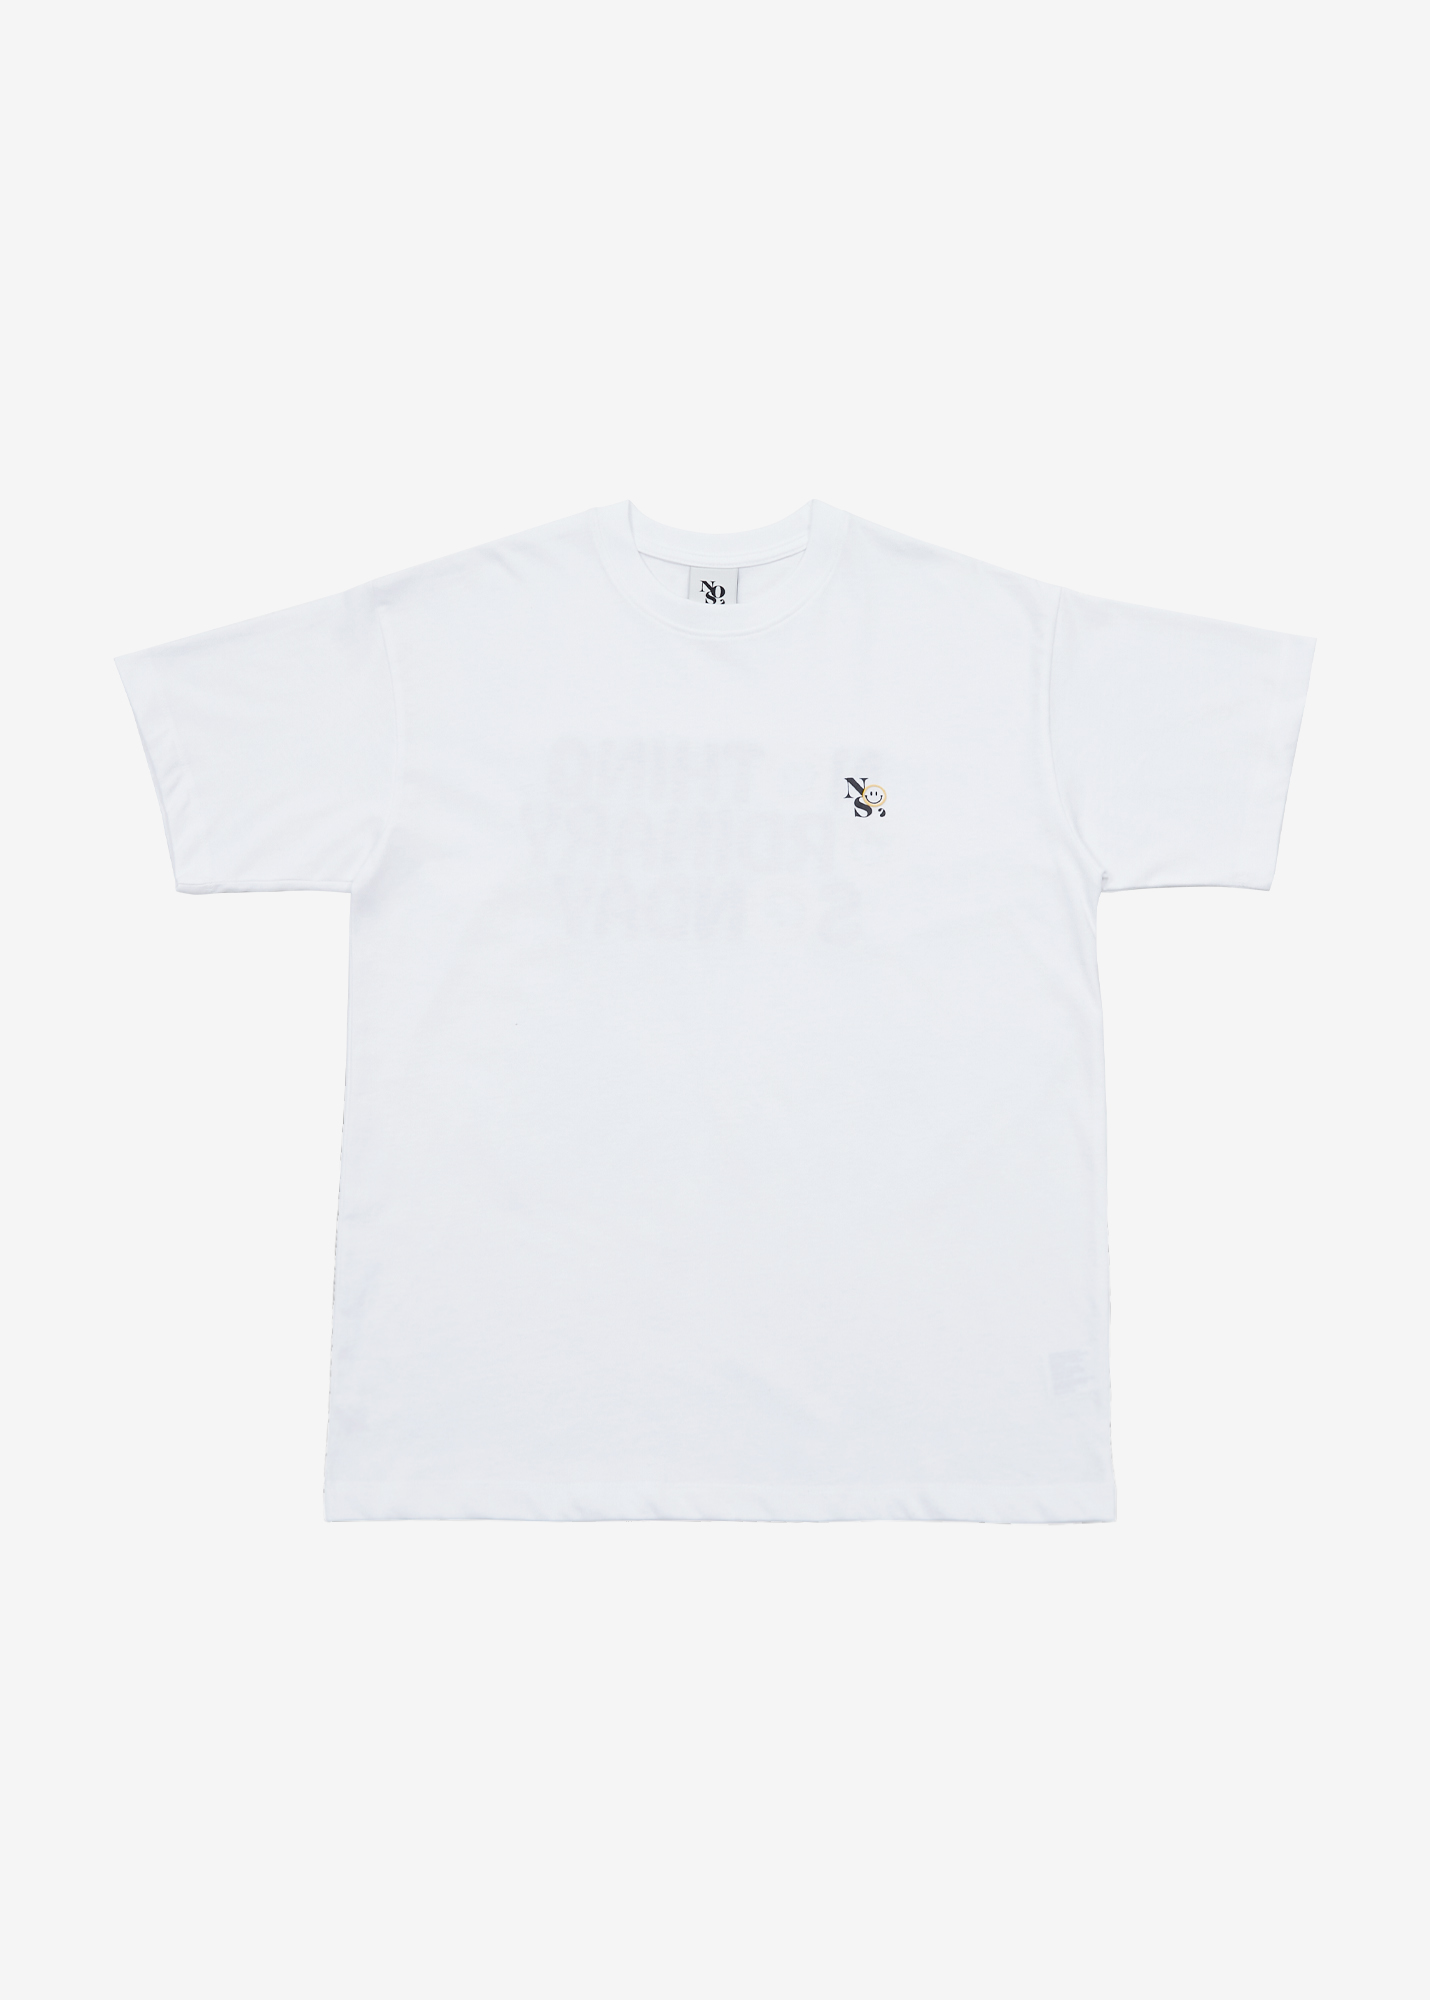 NOS7 Smile T-shirt - White